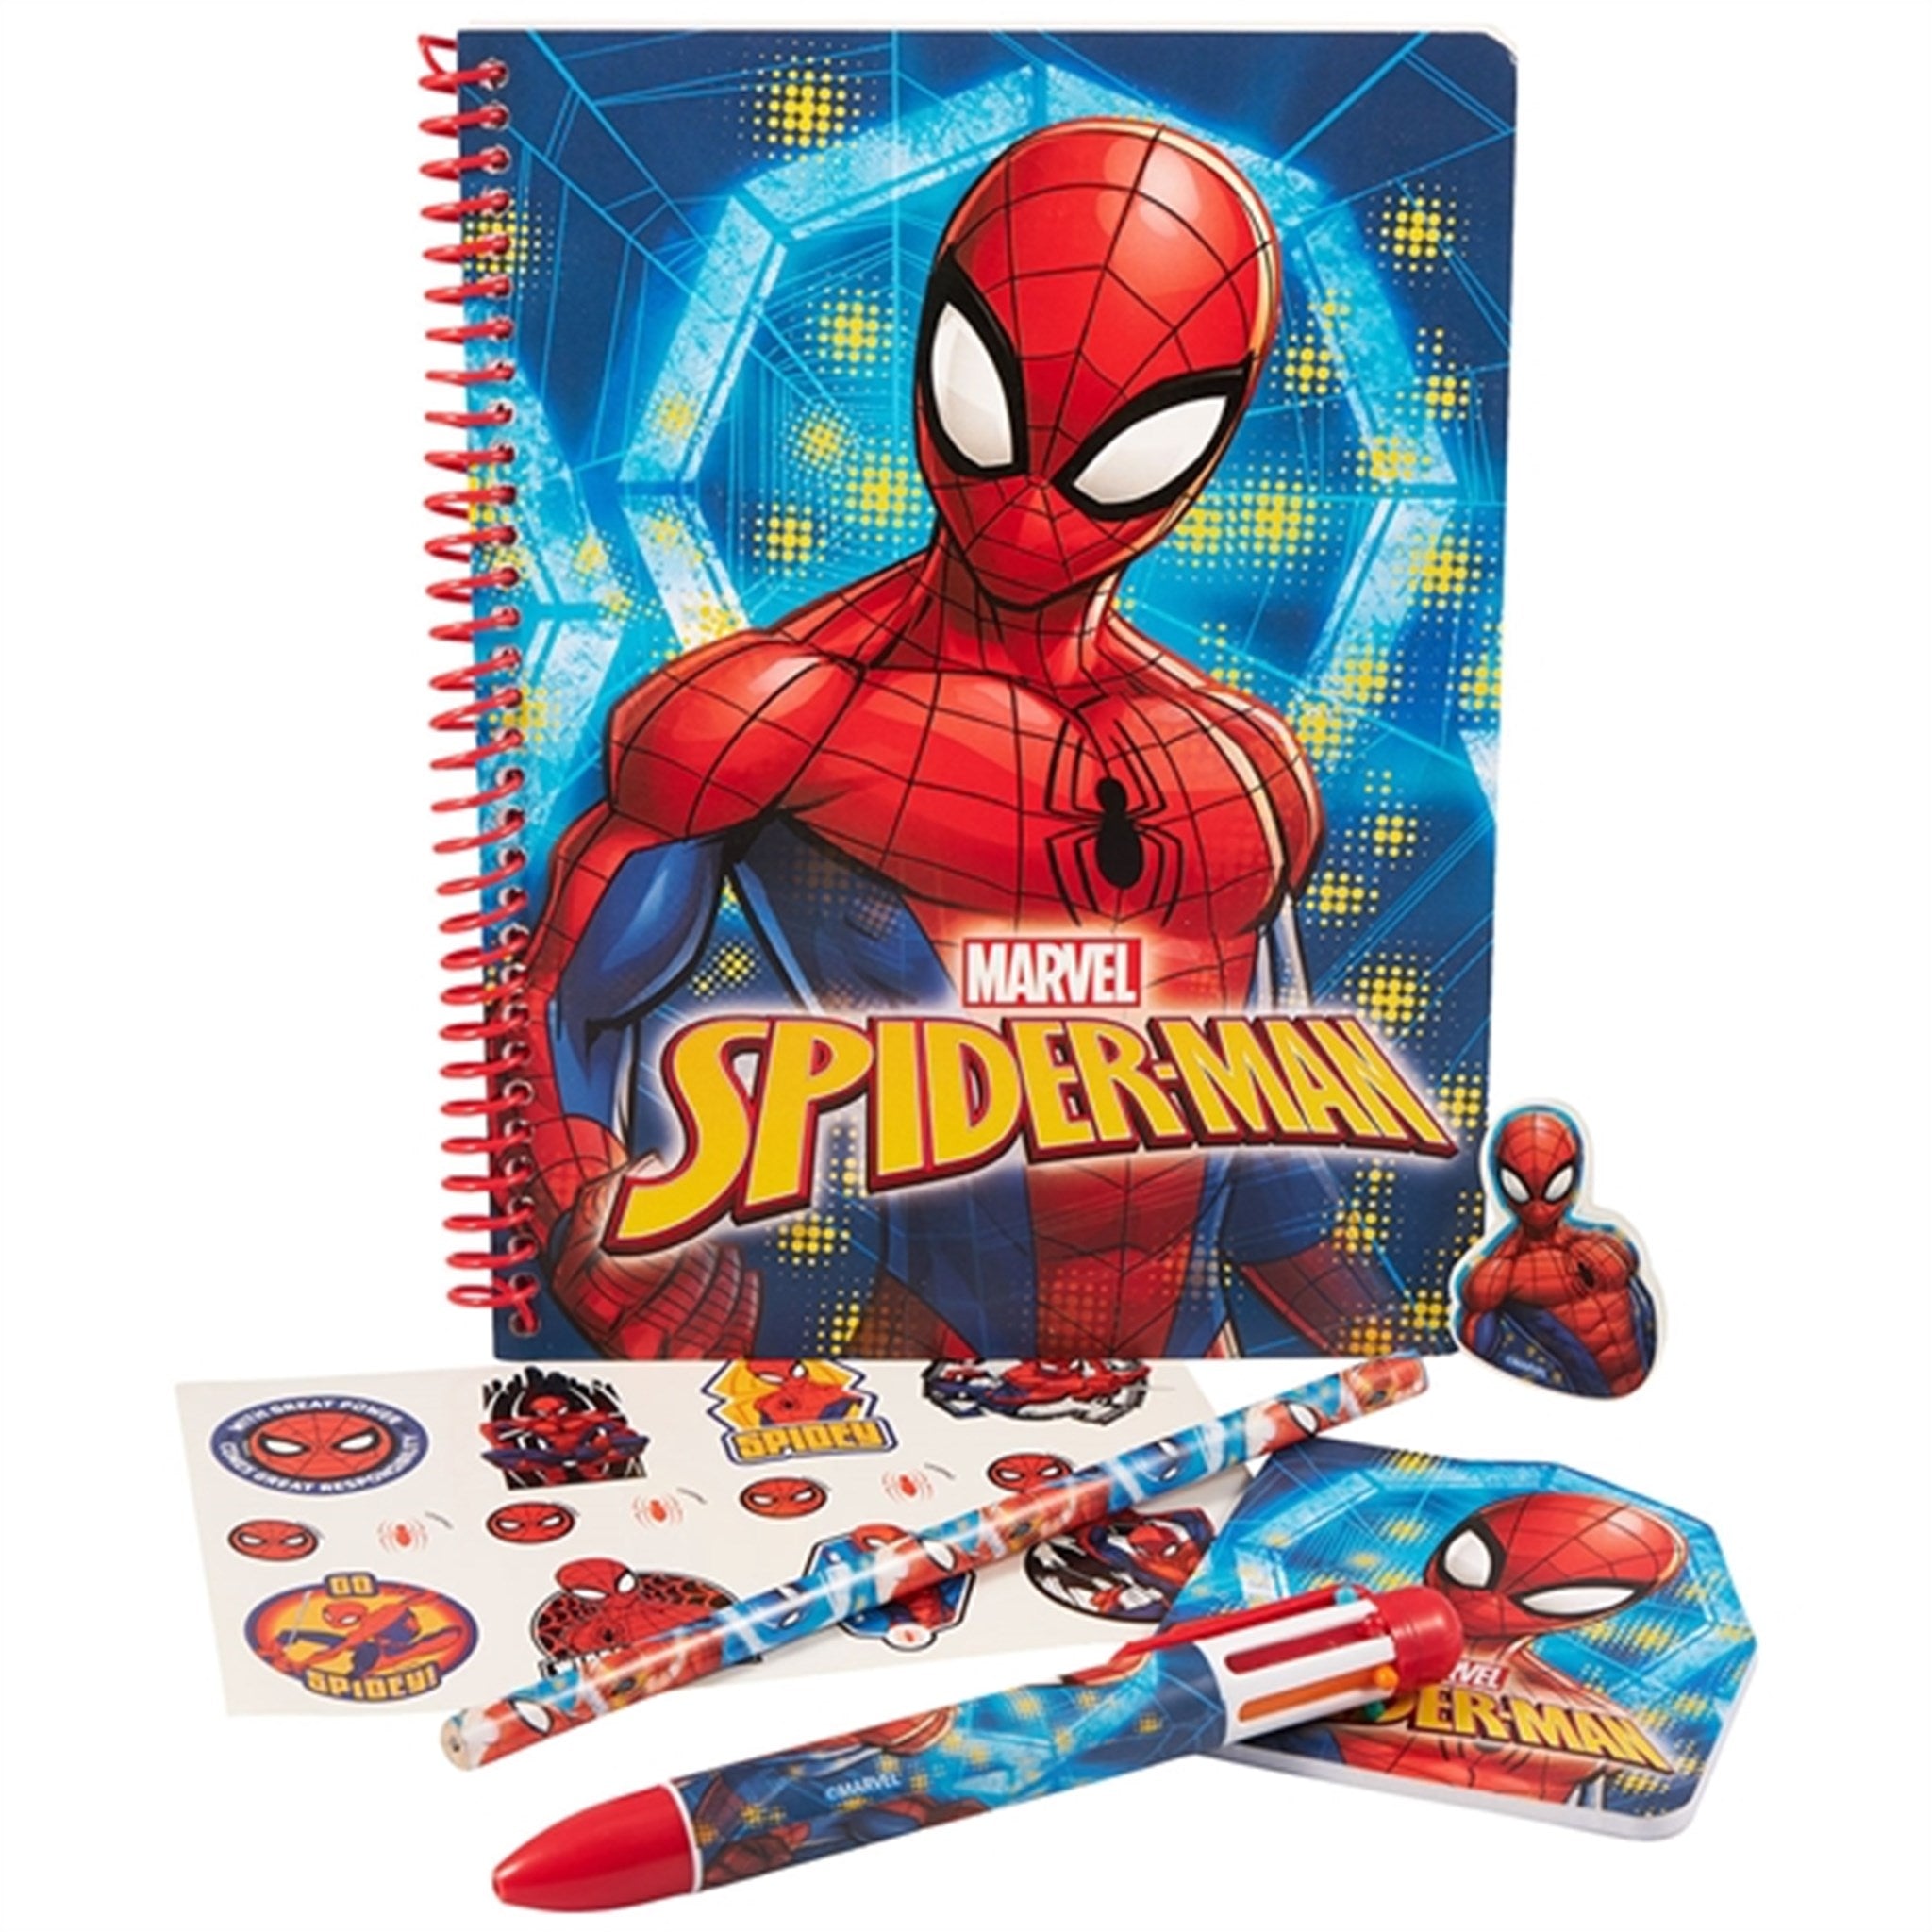 Euromic Spider-Man Writing Set